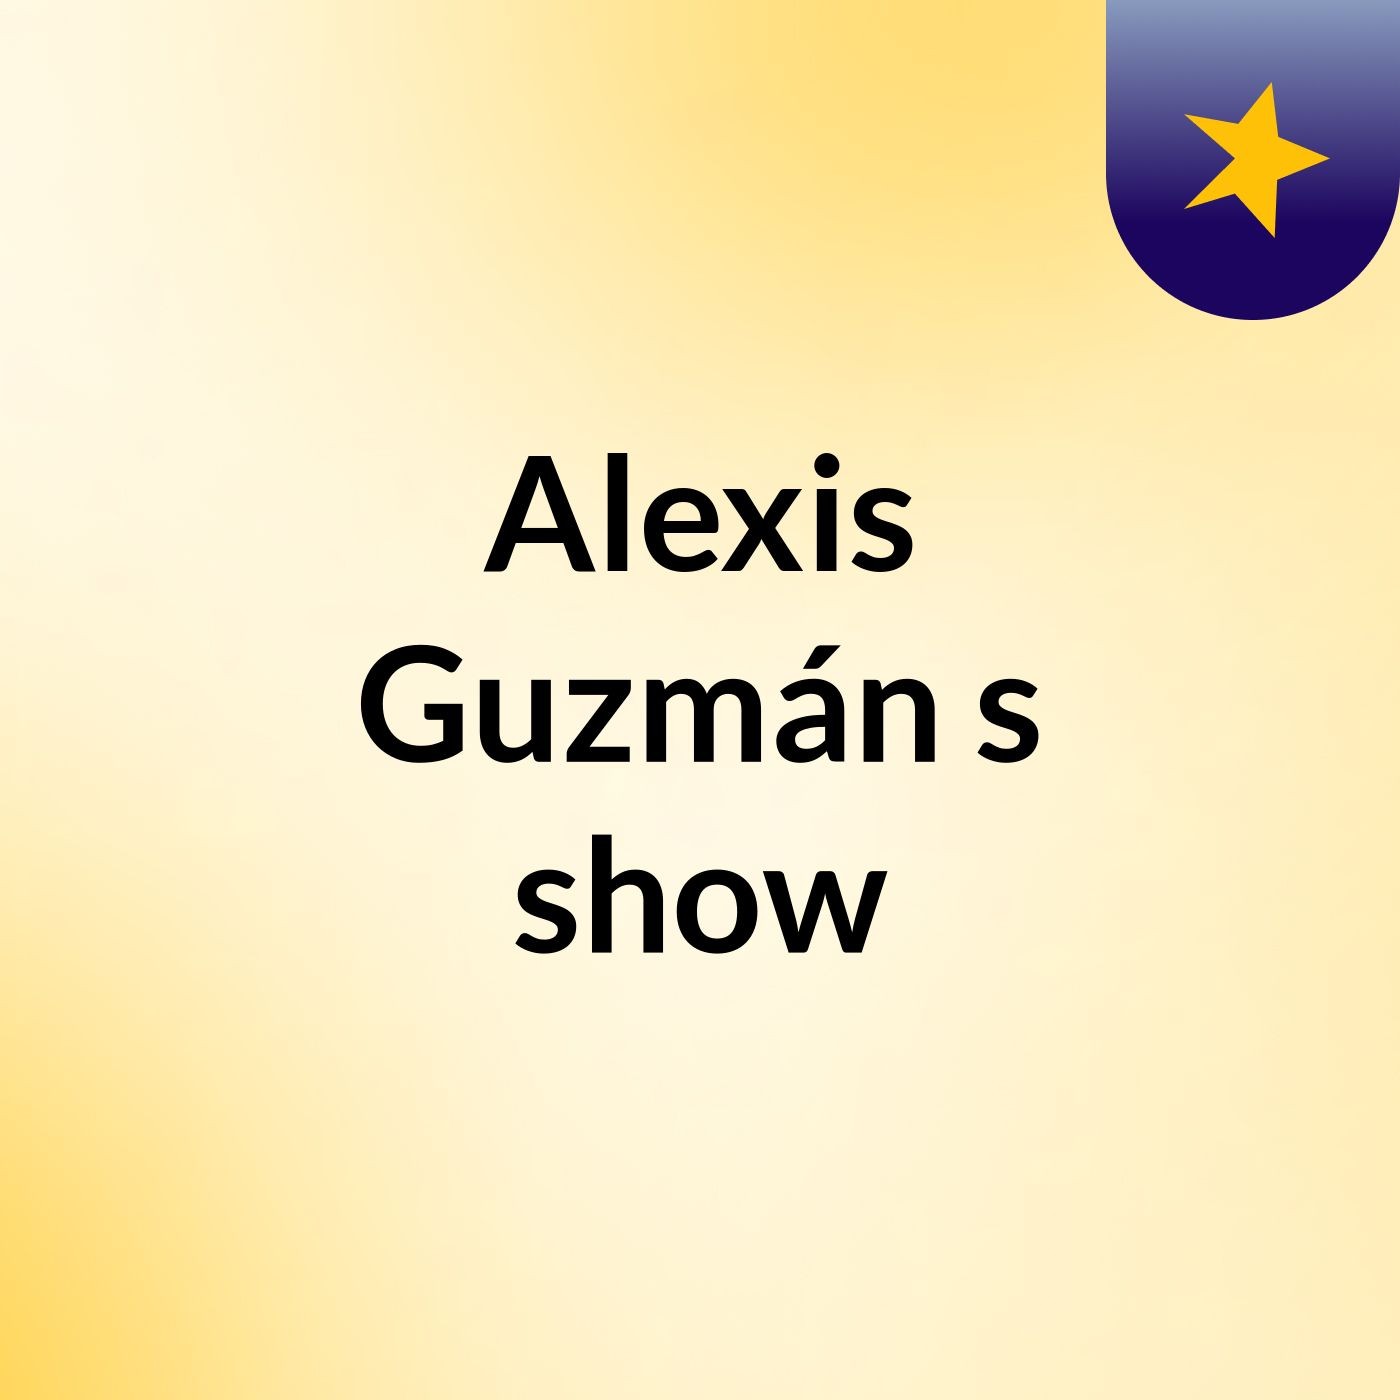 Alexis Guzmán's show